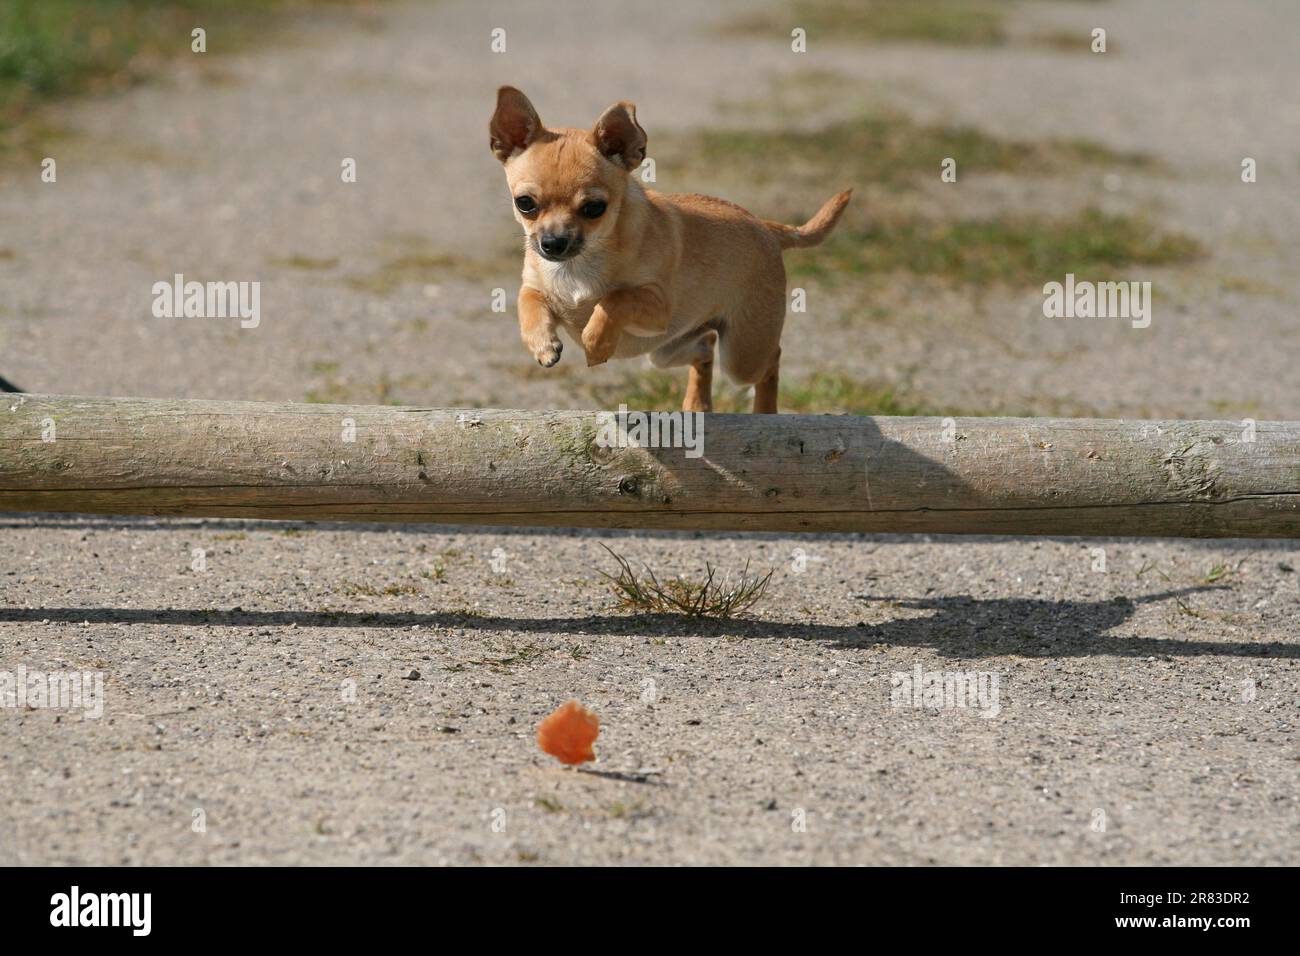 Chihuahua, 5 mois, saute sur un petit obstacle Banque D'Images